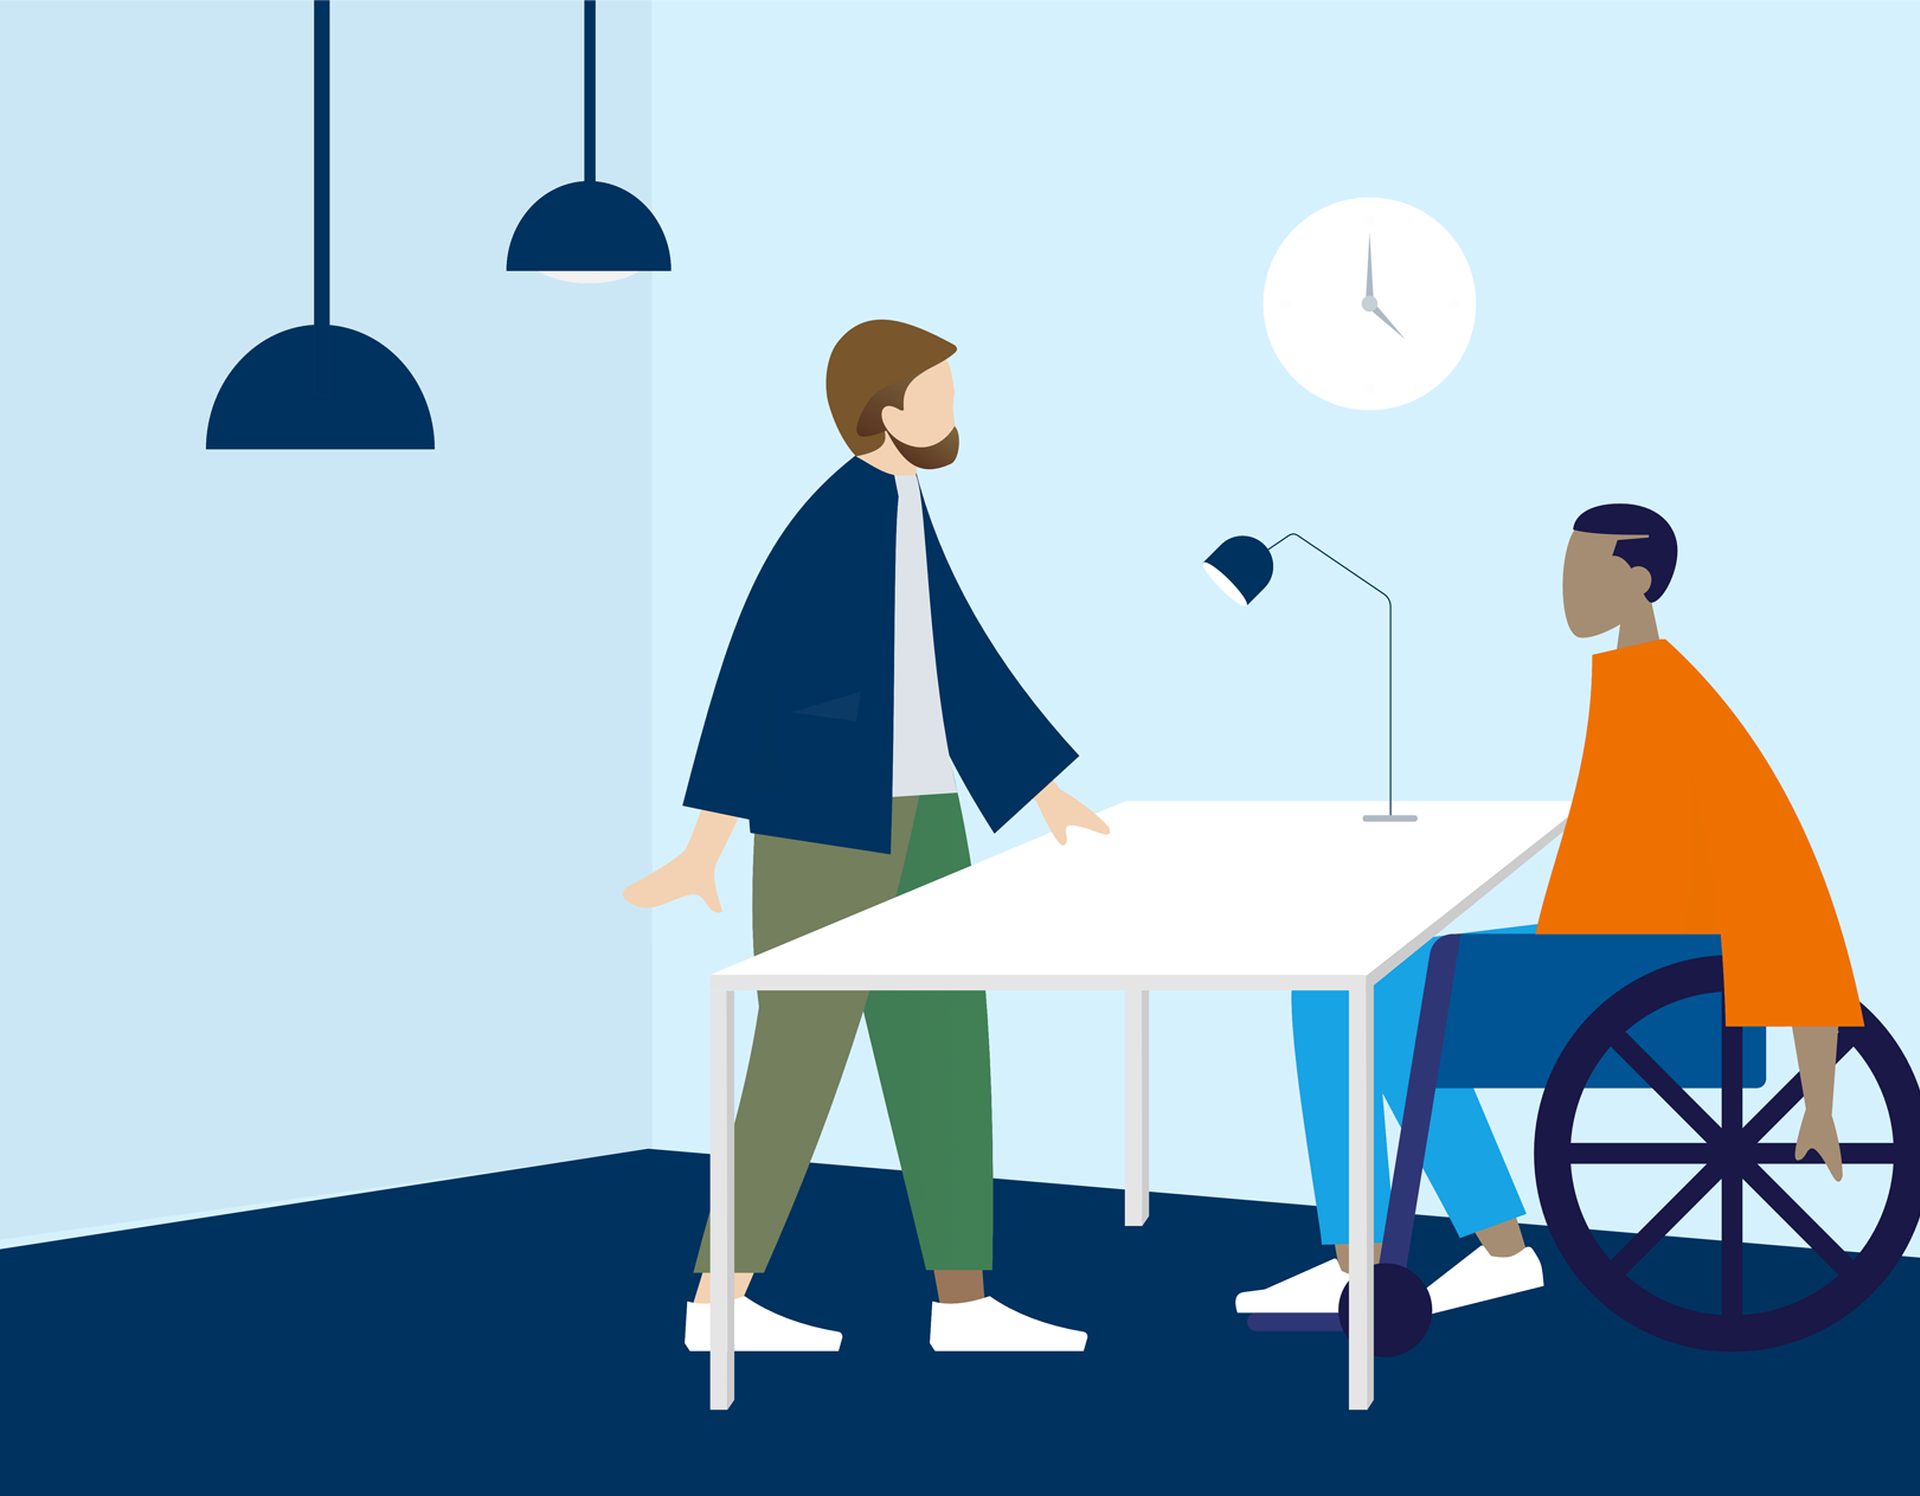 Illustration zweier Personen, die miteinander sprechen. Eine Person sitzt in einem Rollstuhl.